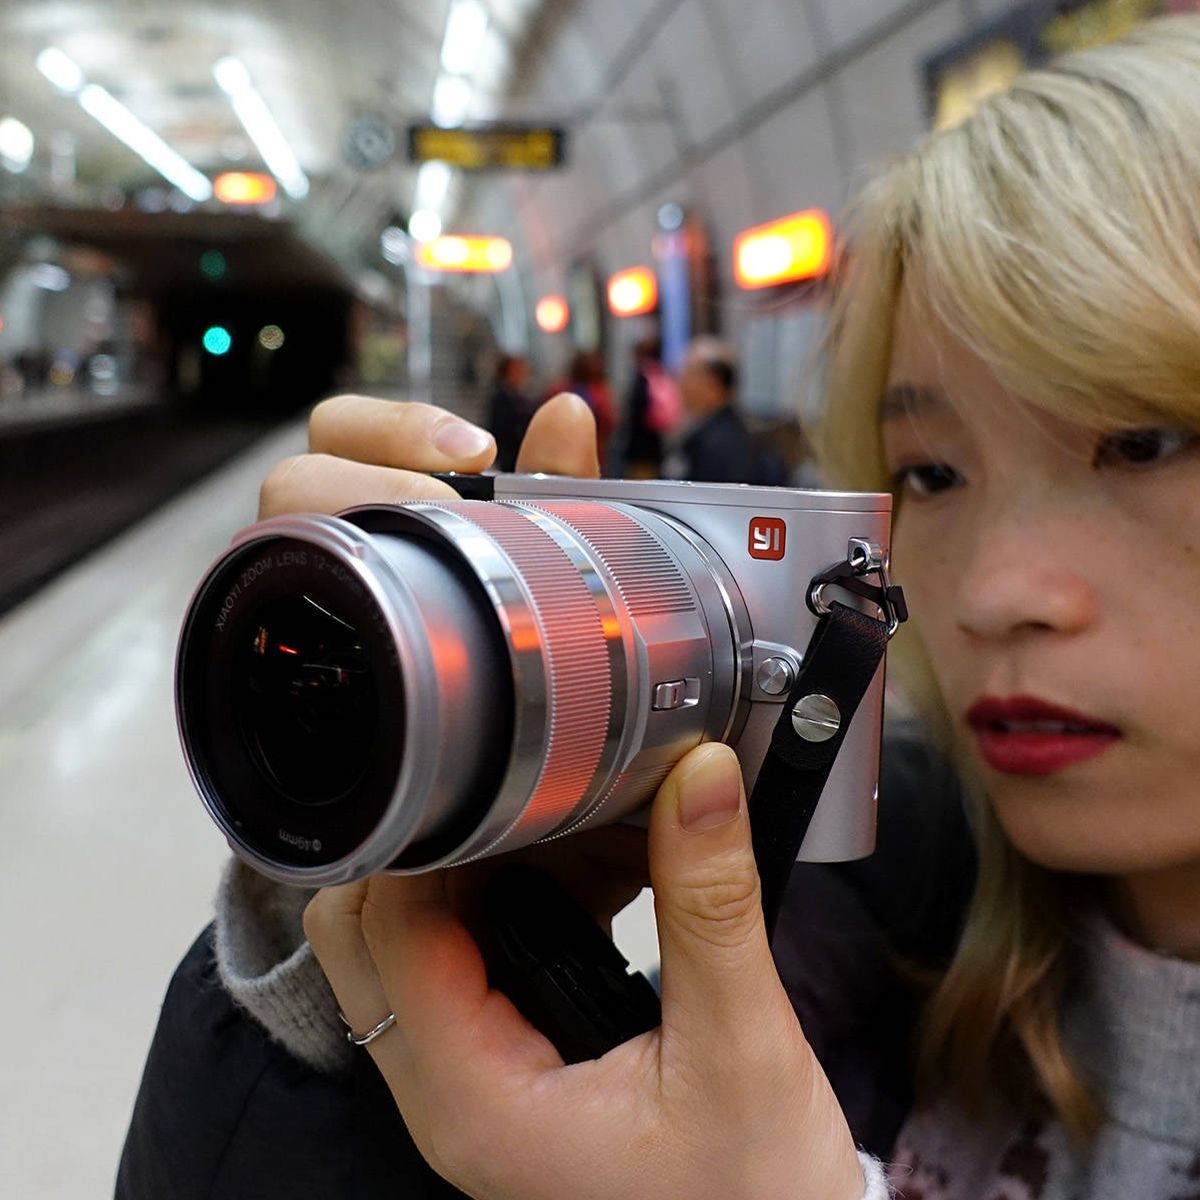 Probamos la Yi M1: la primera cámara 'low cost' de Xiaomi es una decepción